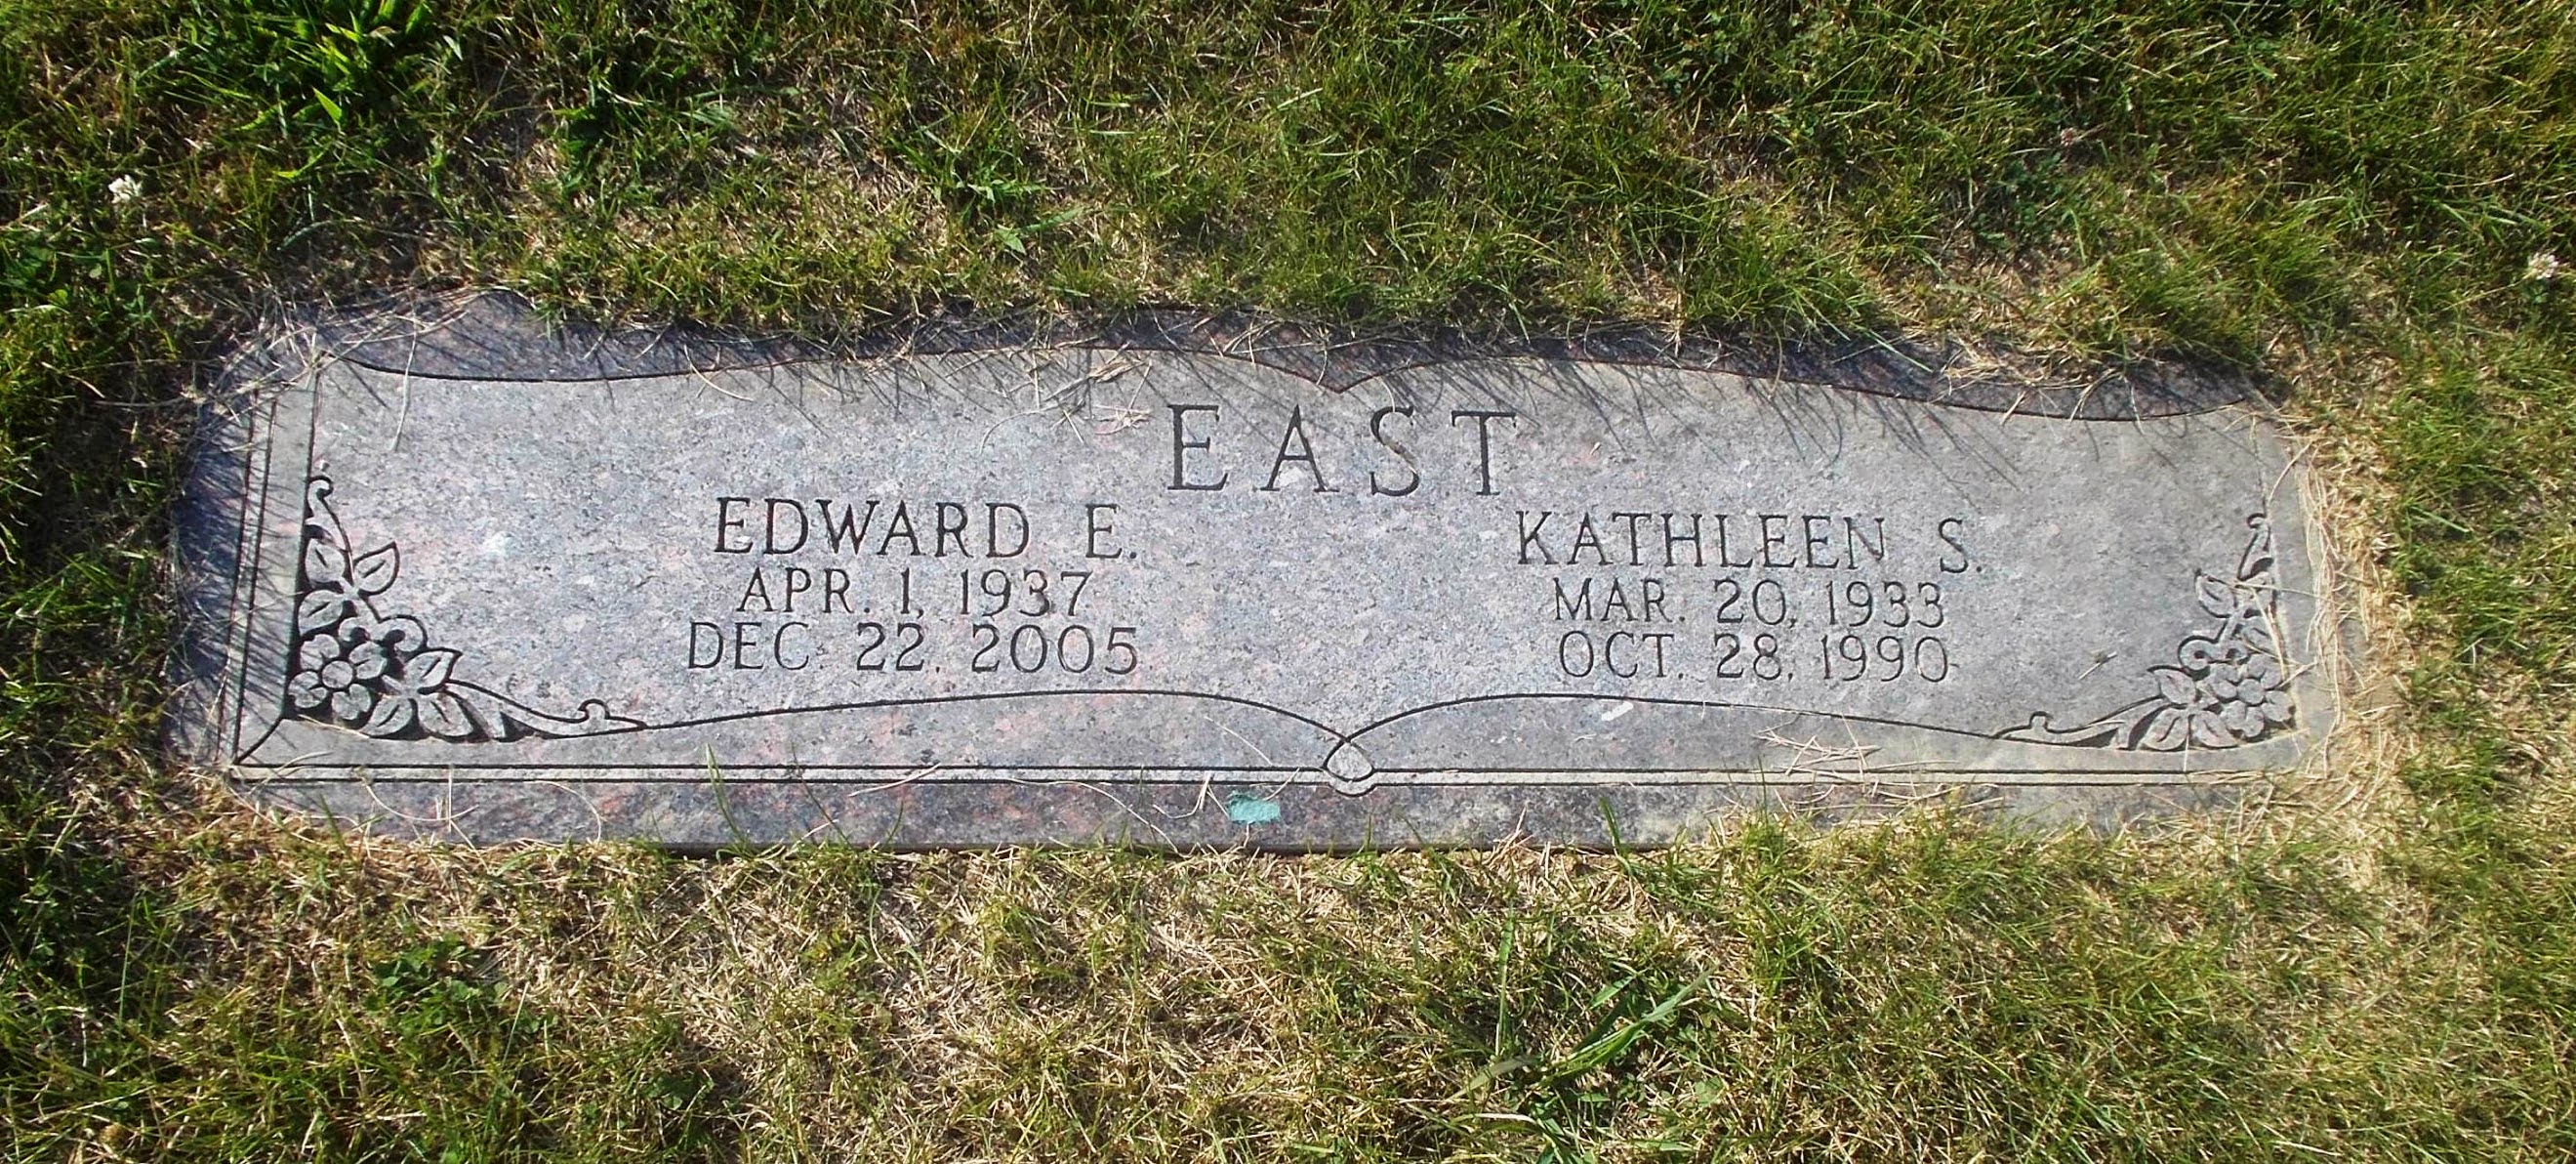 Edward E East